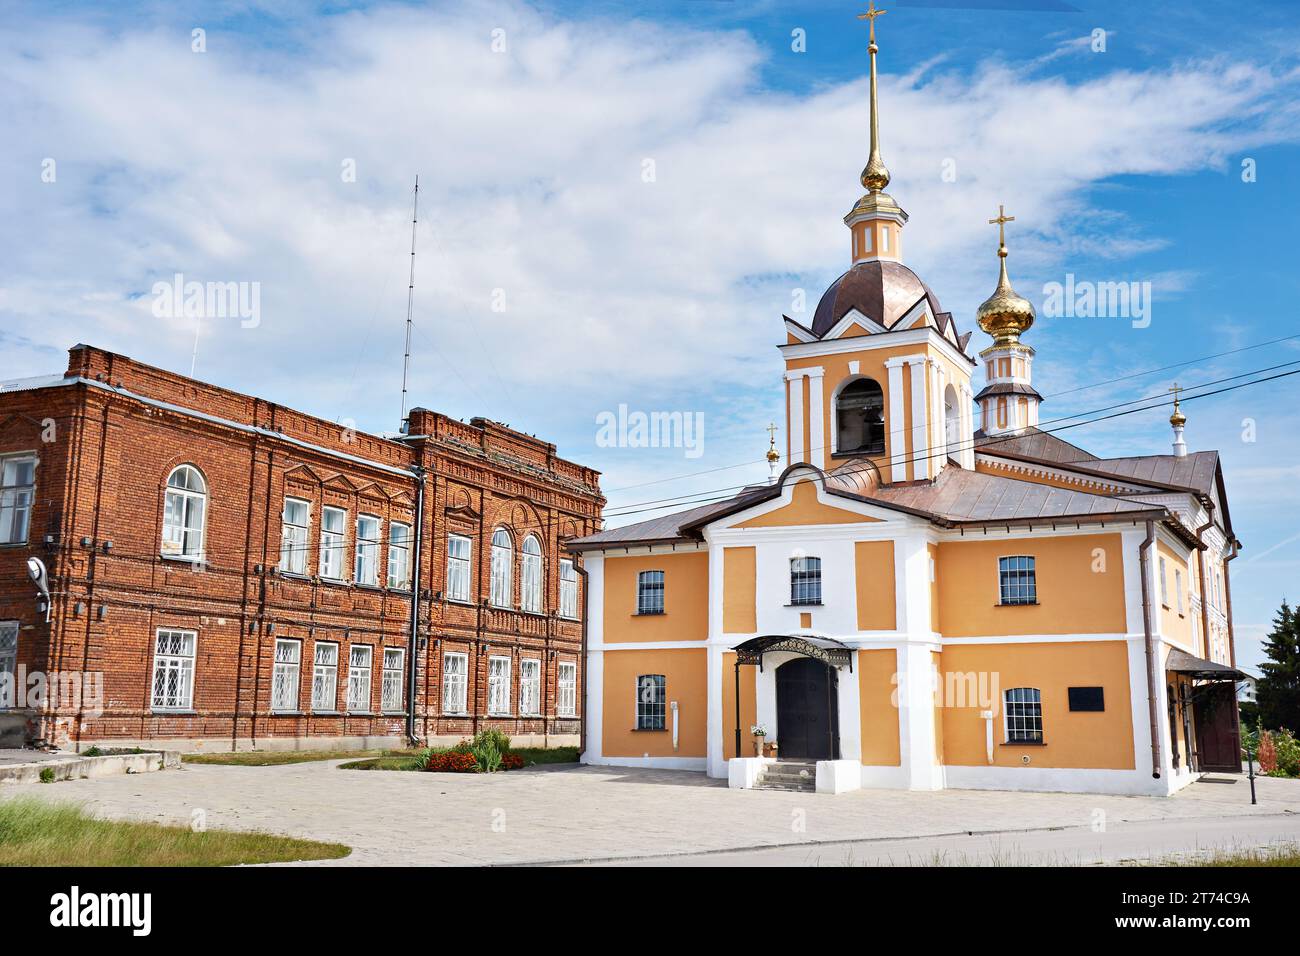 Kresto Nikolskaya church in Suzdal, Russia Stock Photo